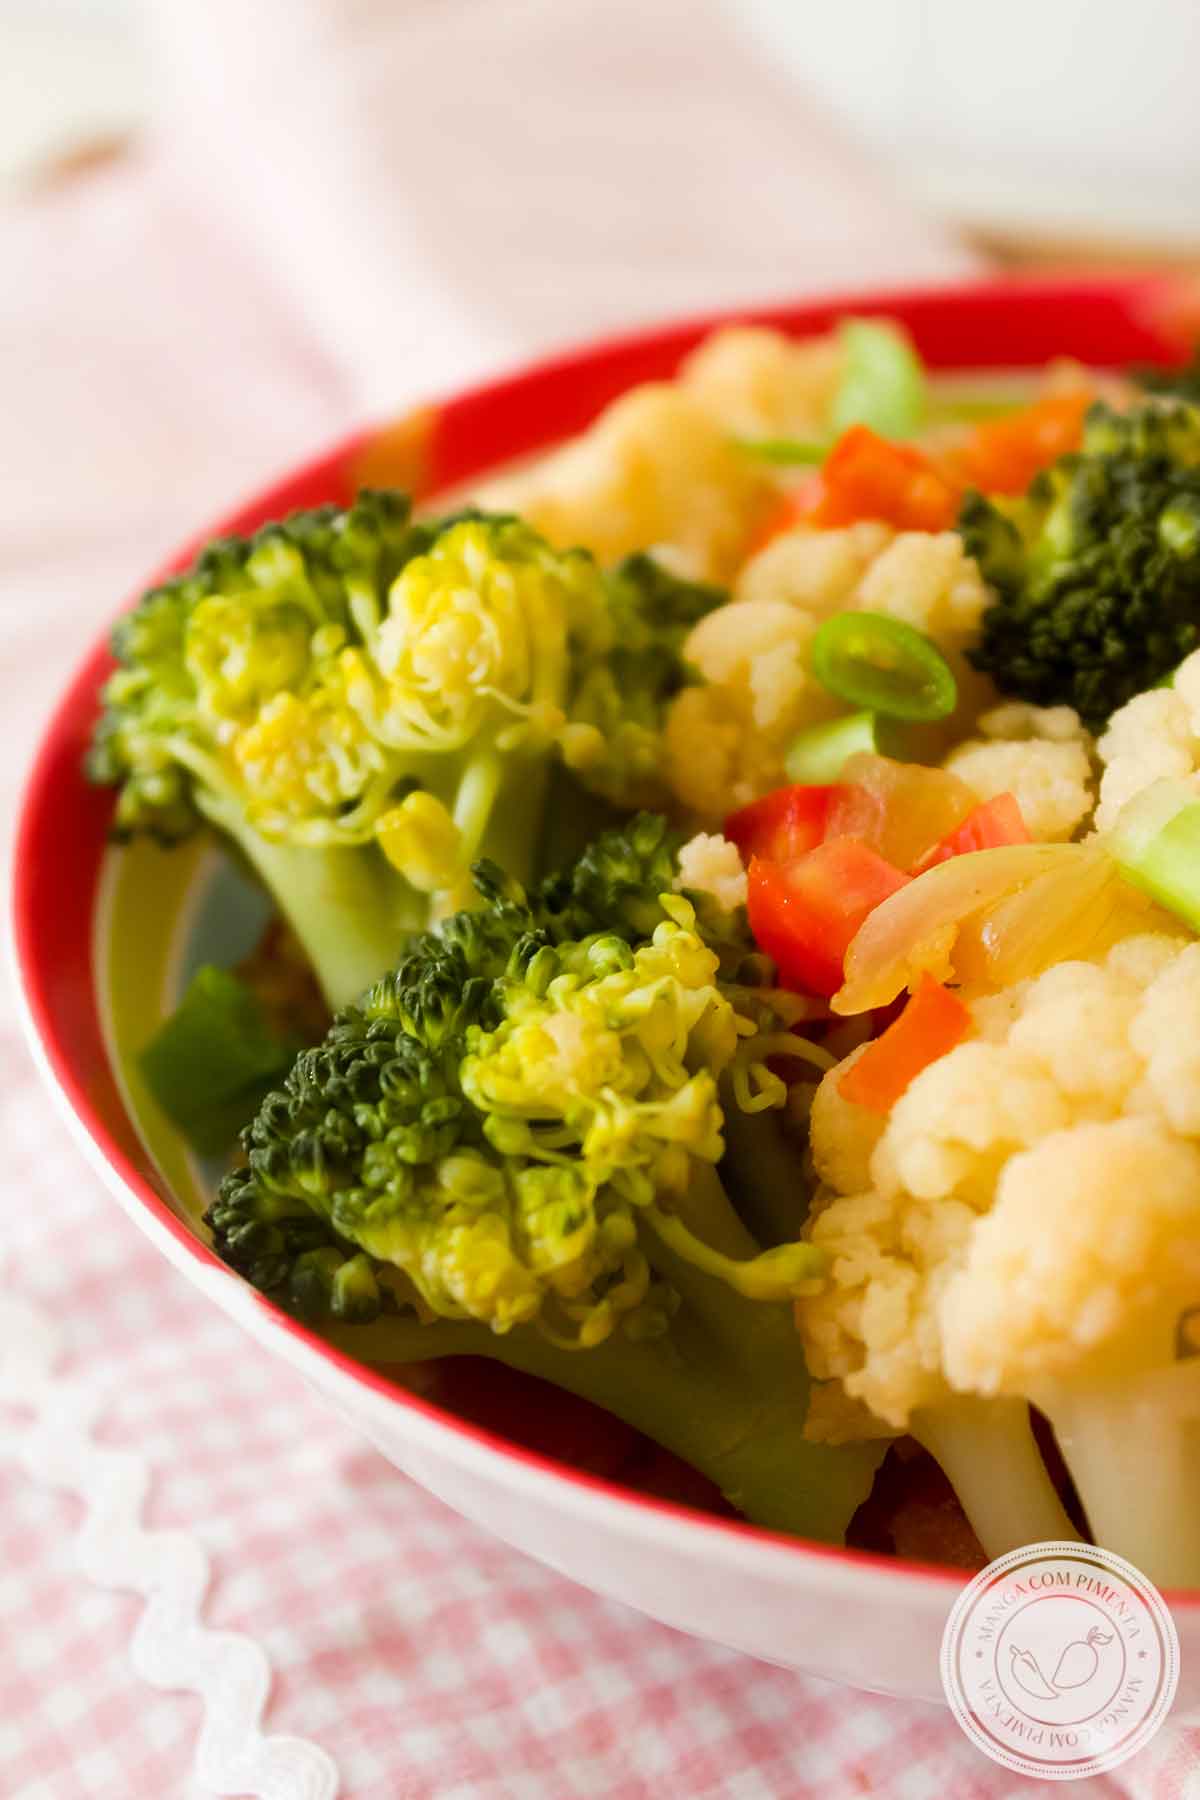 Receita de Refogado de Brócolis e Couve-flor - um delicioso acompanhamento para o almoço da semana.